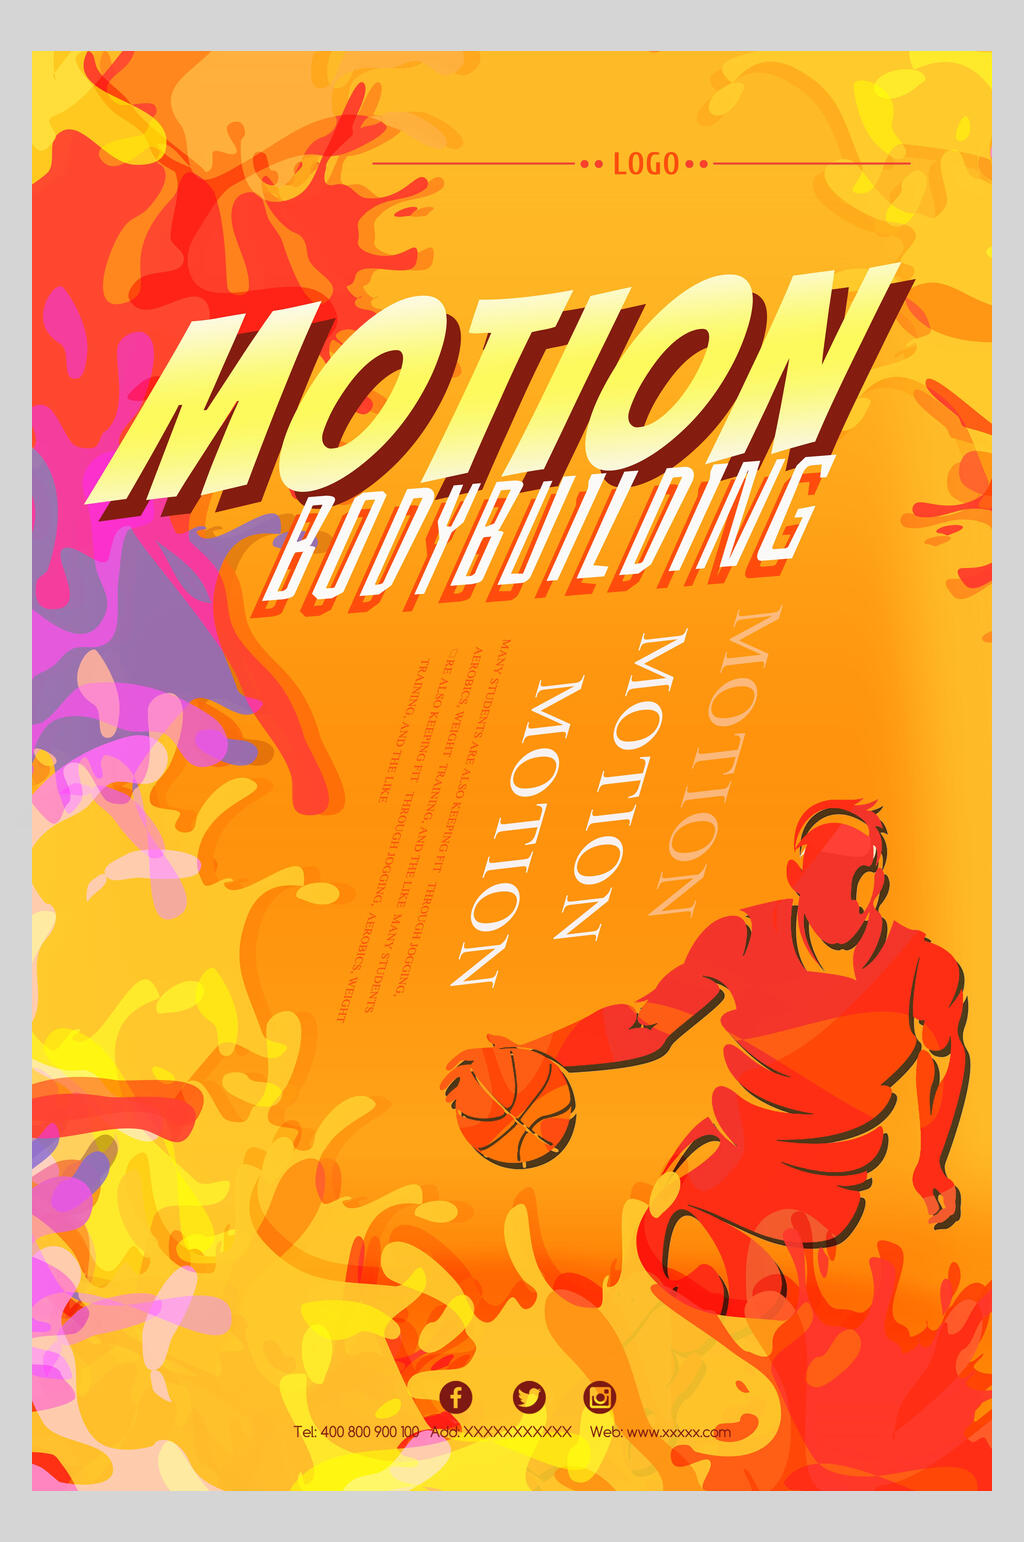 篮球俱乐部英语海报图片